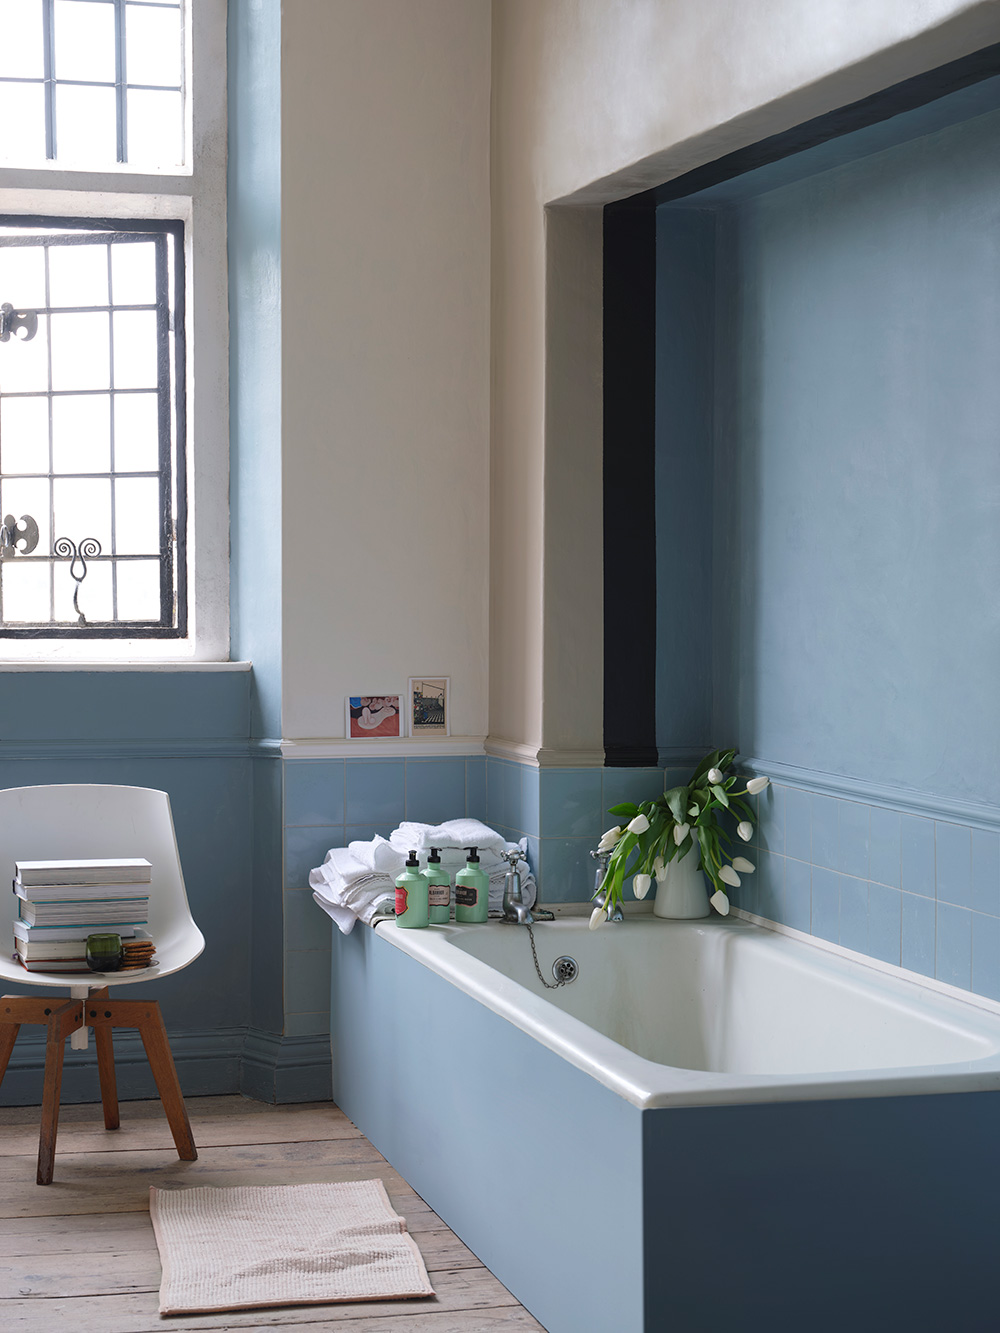 Visuel salle de bain en couleur sardine CB8 pour la baignoire et accent  sur les murs en Roasted Macadamia CB2, Au lait CB9 et liquorice CB10